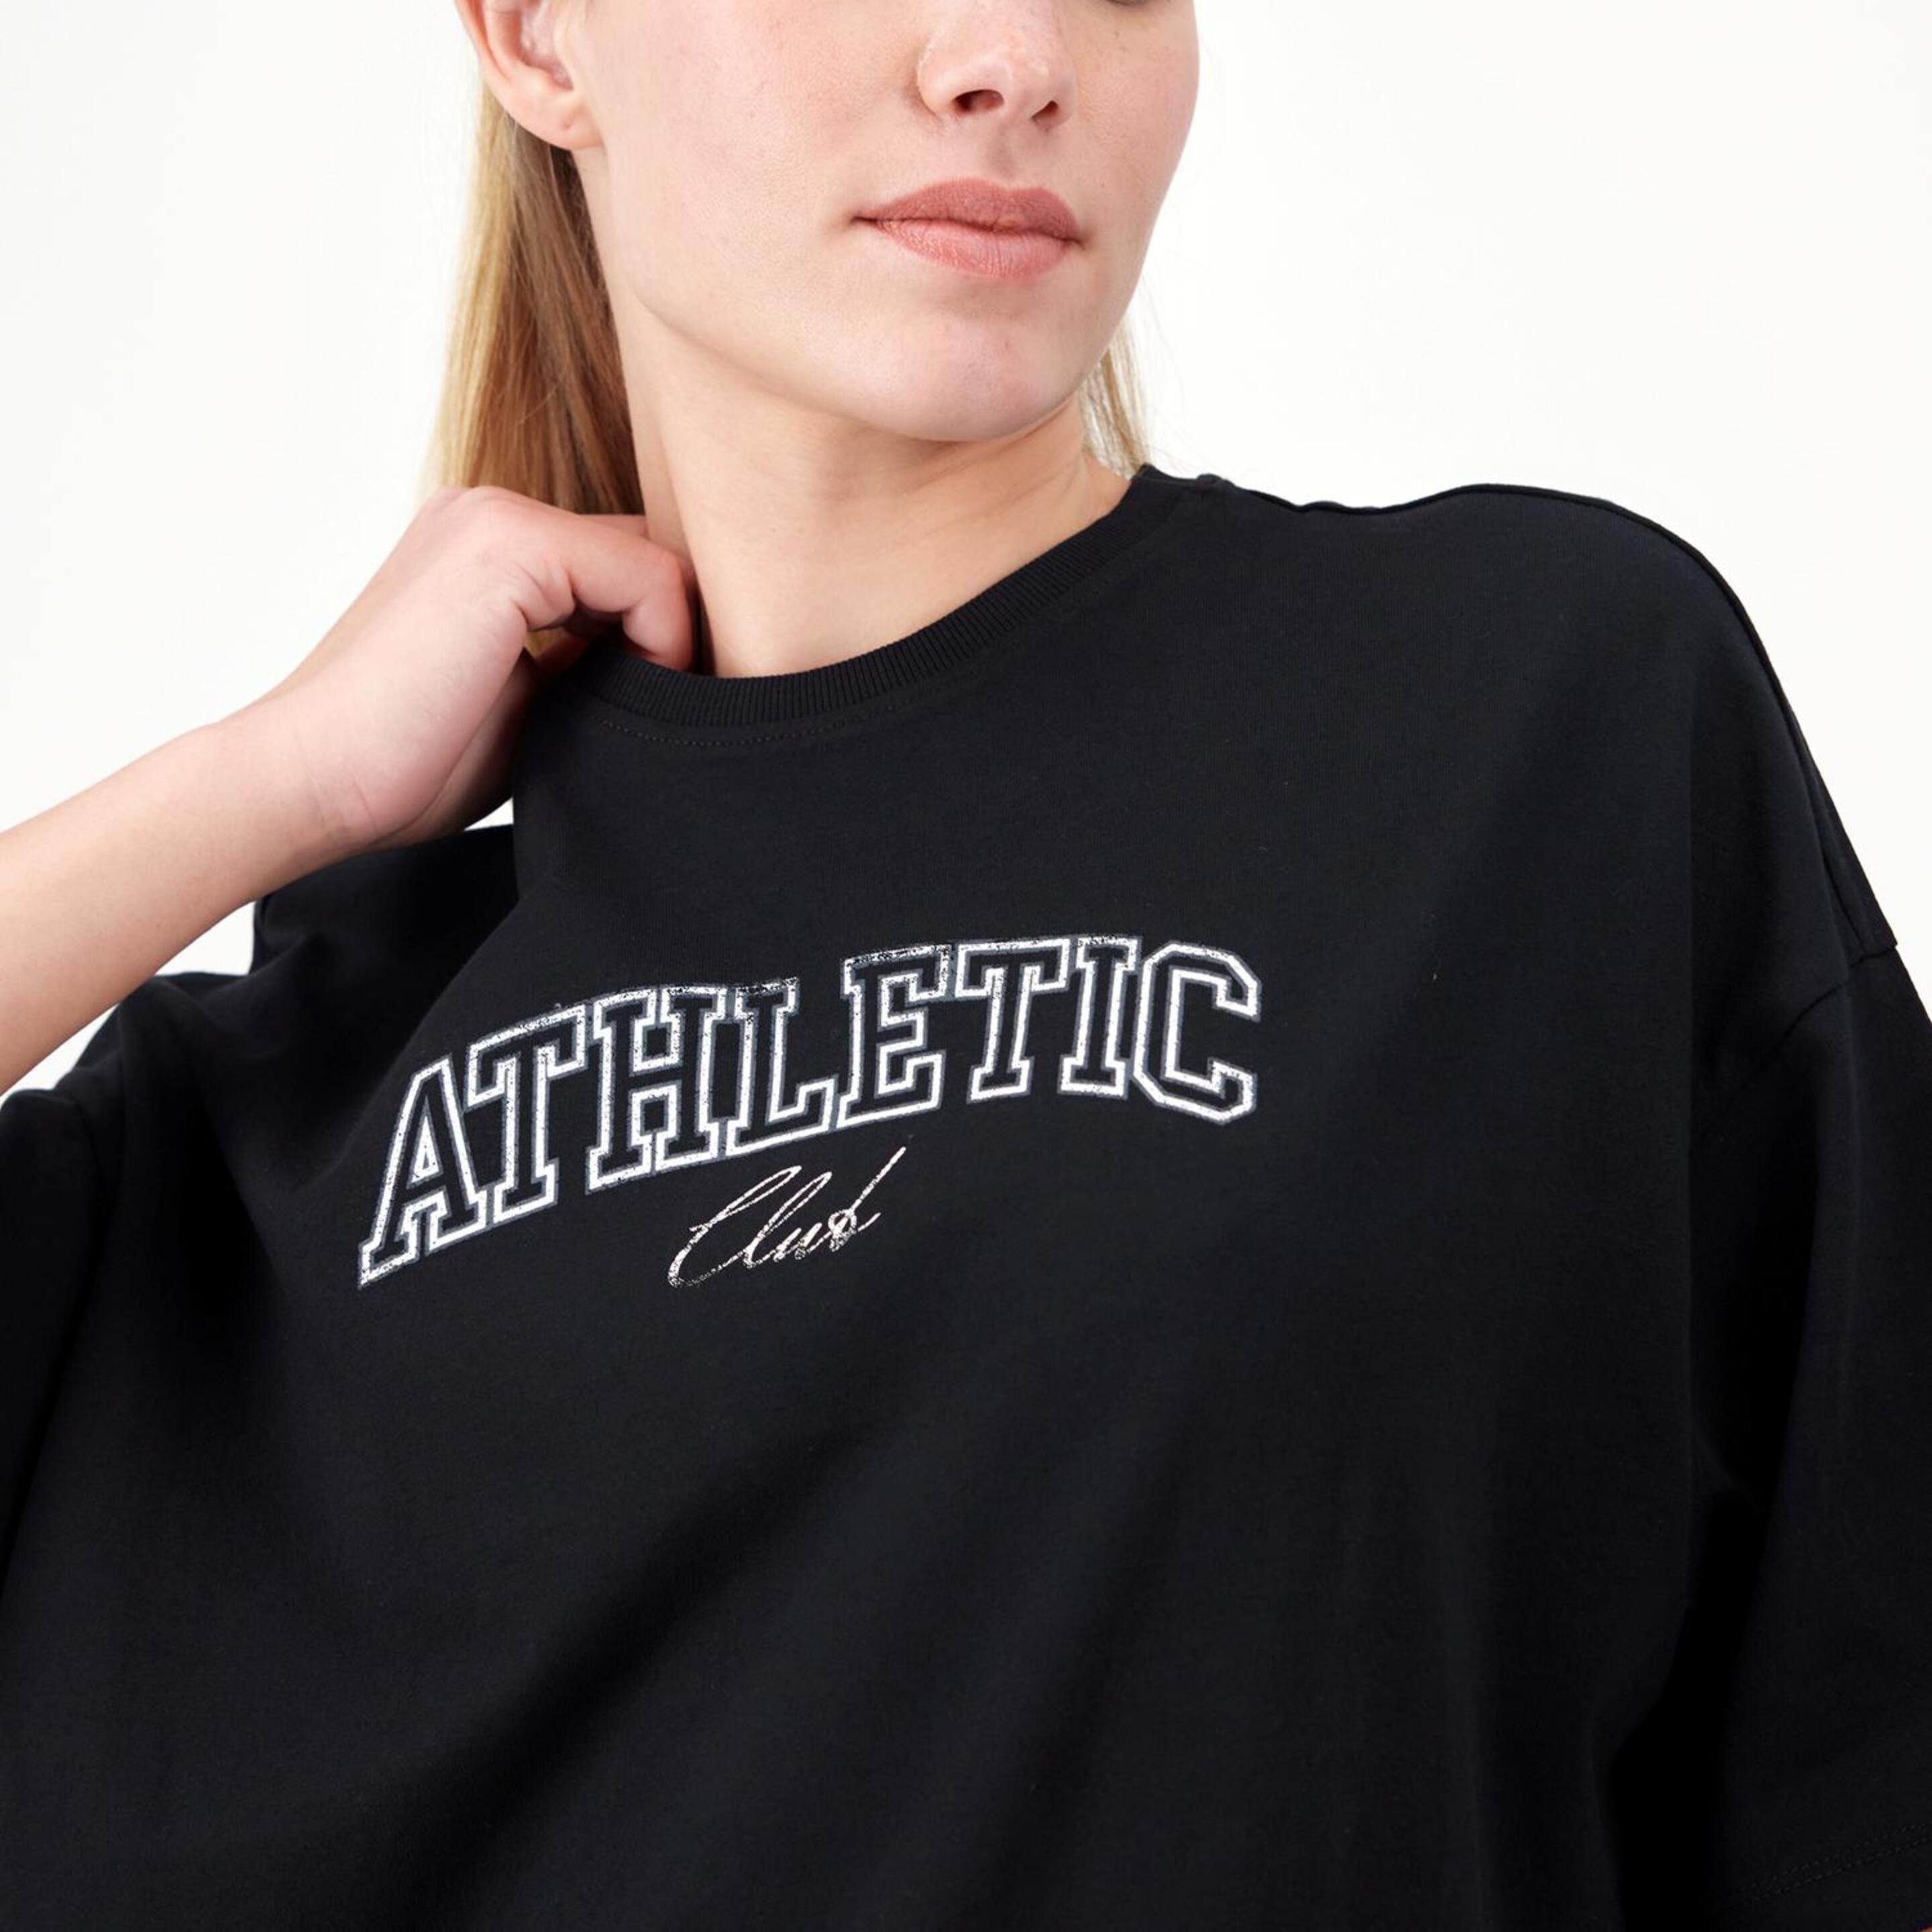 Silver Athletic - Negro - Camiseta Oversize Mujer